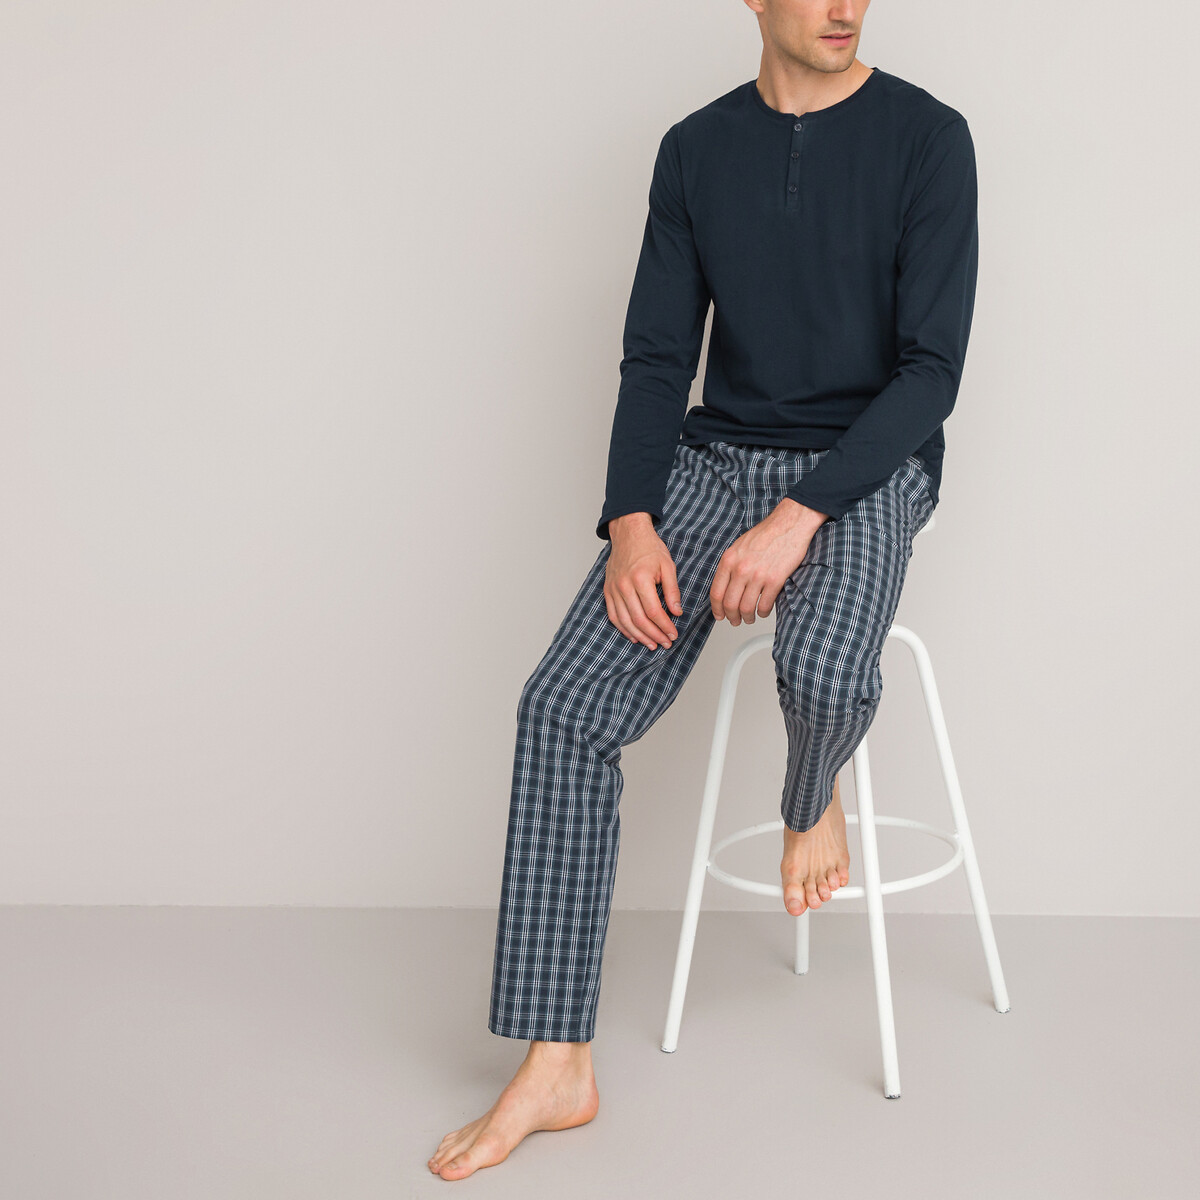 Pijama de algodón bio La Redoute de Tejido sintético de color Negro para hombre Hombre Ropa de Ropa para dormir de Pijamas y ropa de estar por casa 